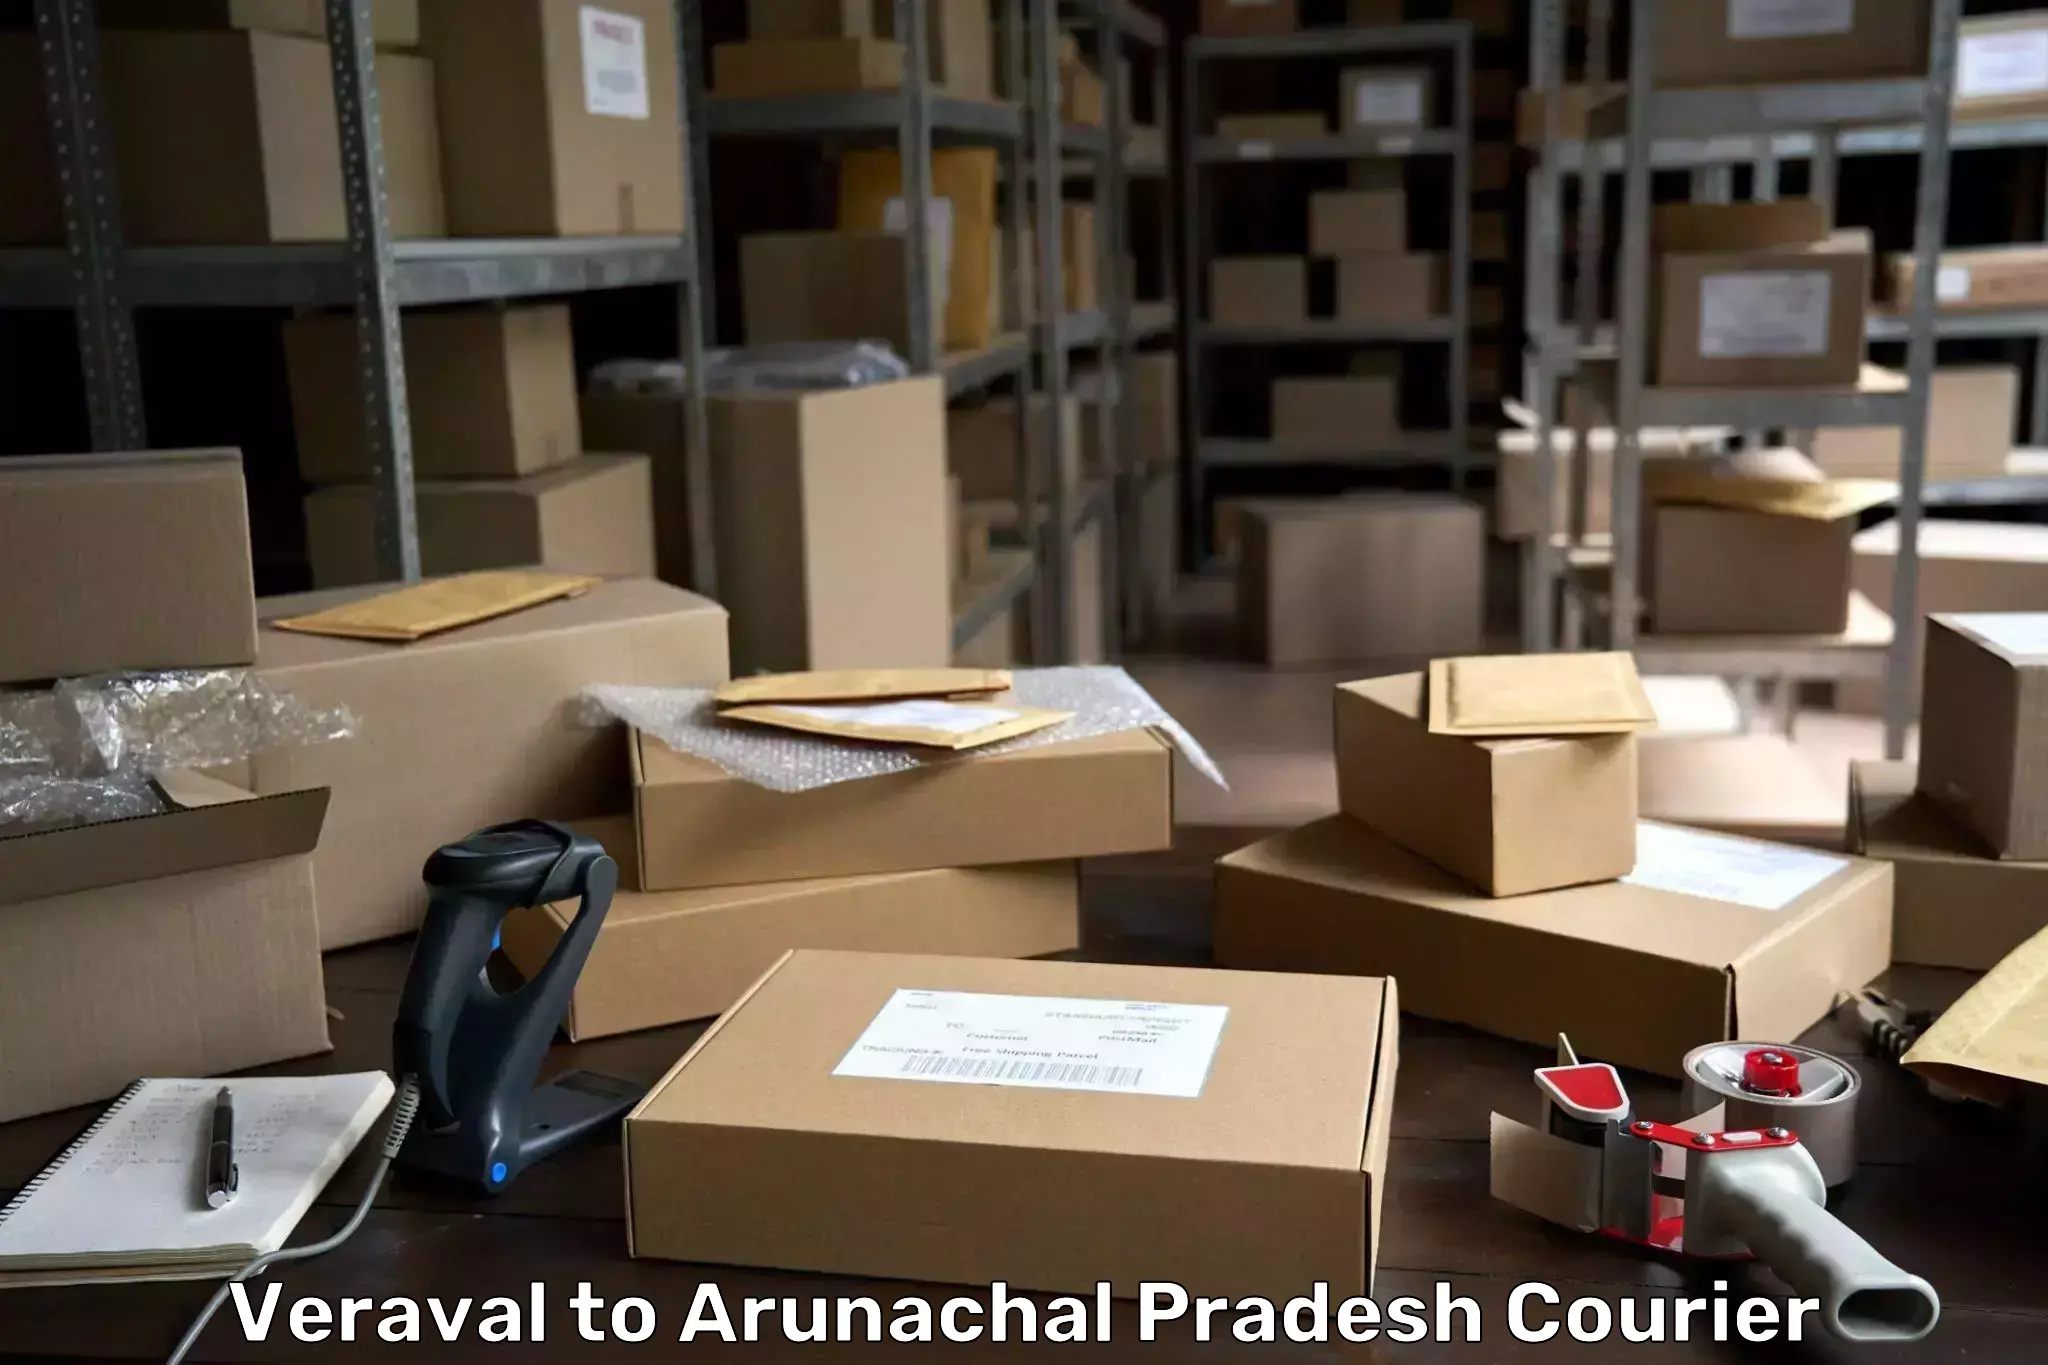 Urban courier service Veraval to Arunachal Pradesh